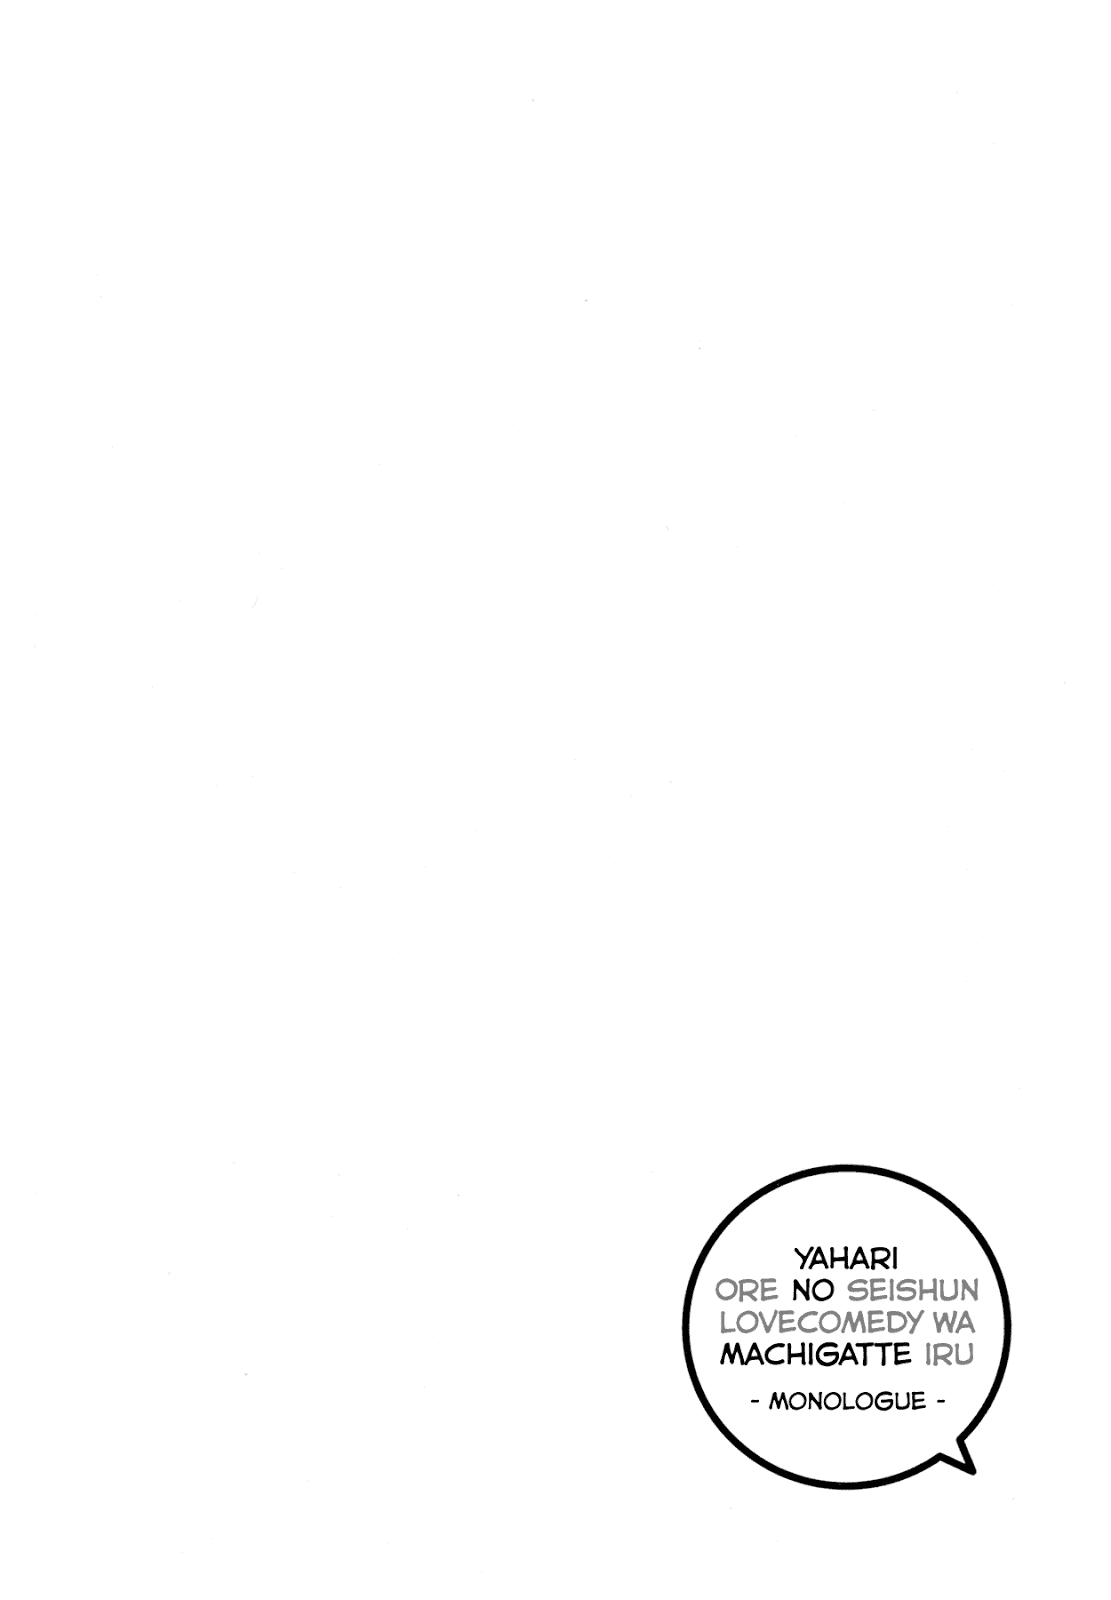 Yahari Ore no Seishun Love Comedy wa Machigatteiru Monologue Chapter 2